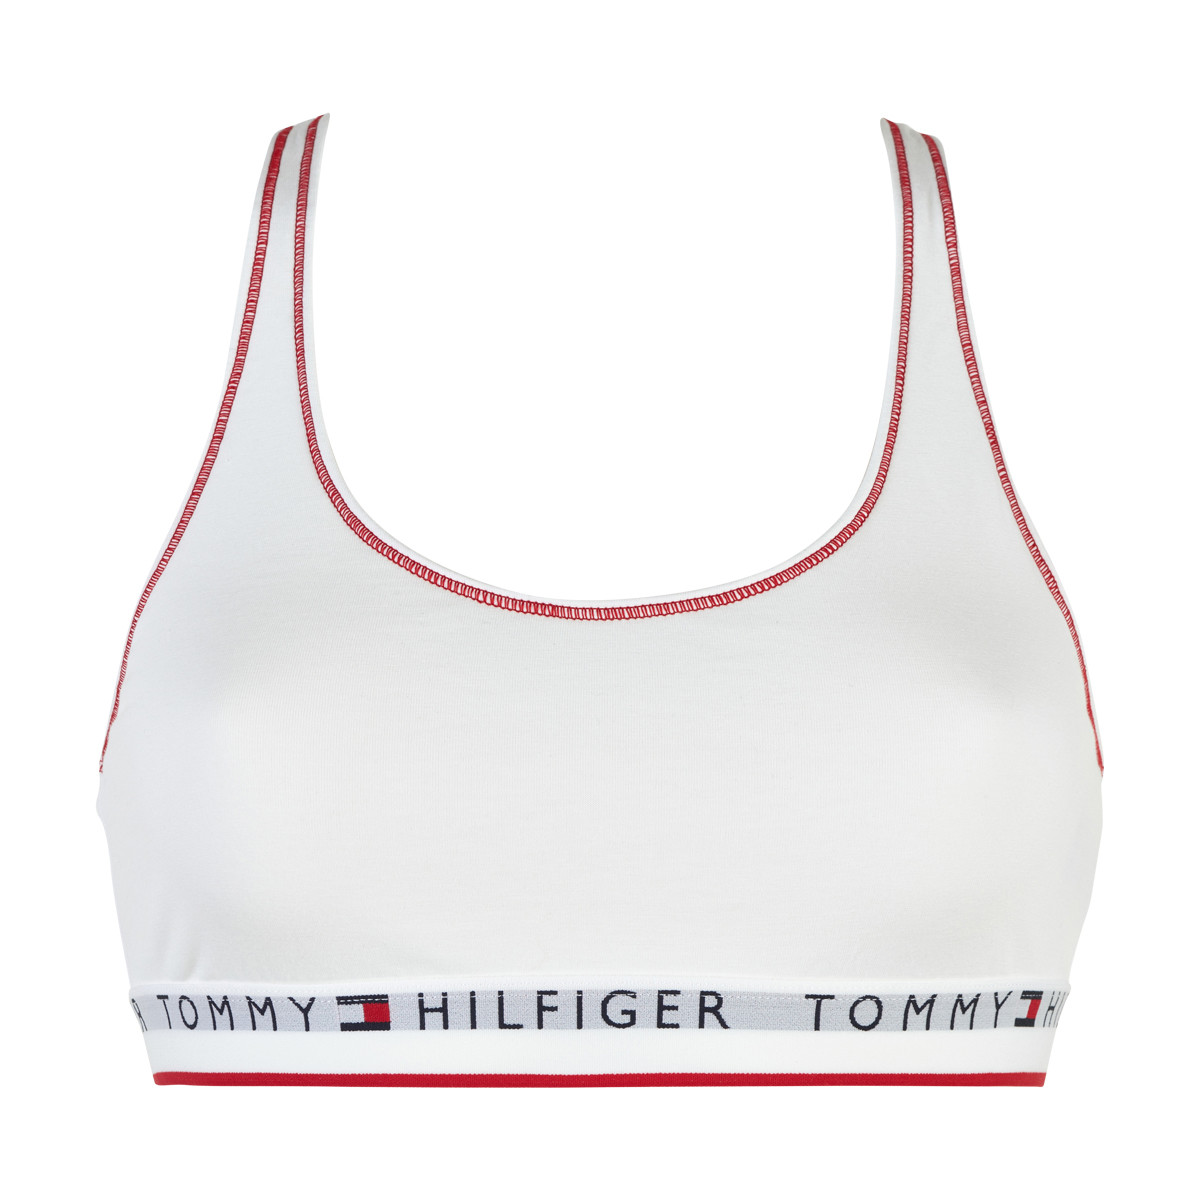 Tommy Hilfiger Lingeri Bralette W Ybr, Farve: Hvid, Størrelse: XL, Dame